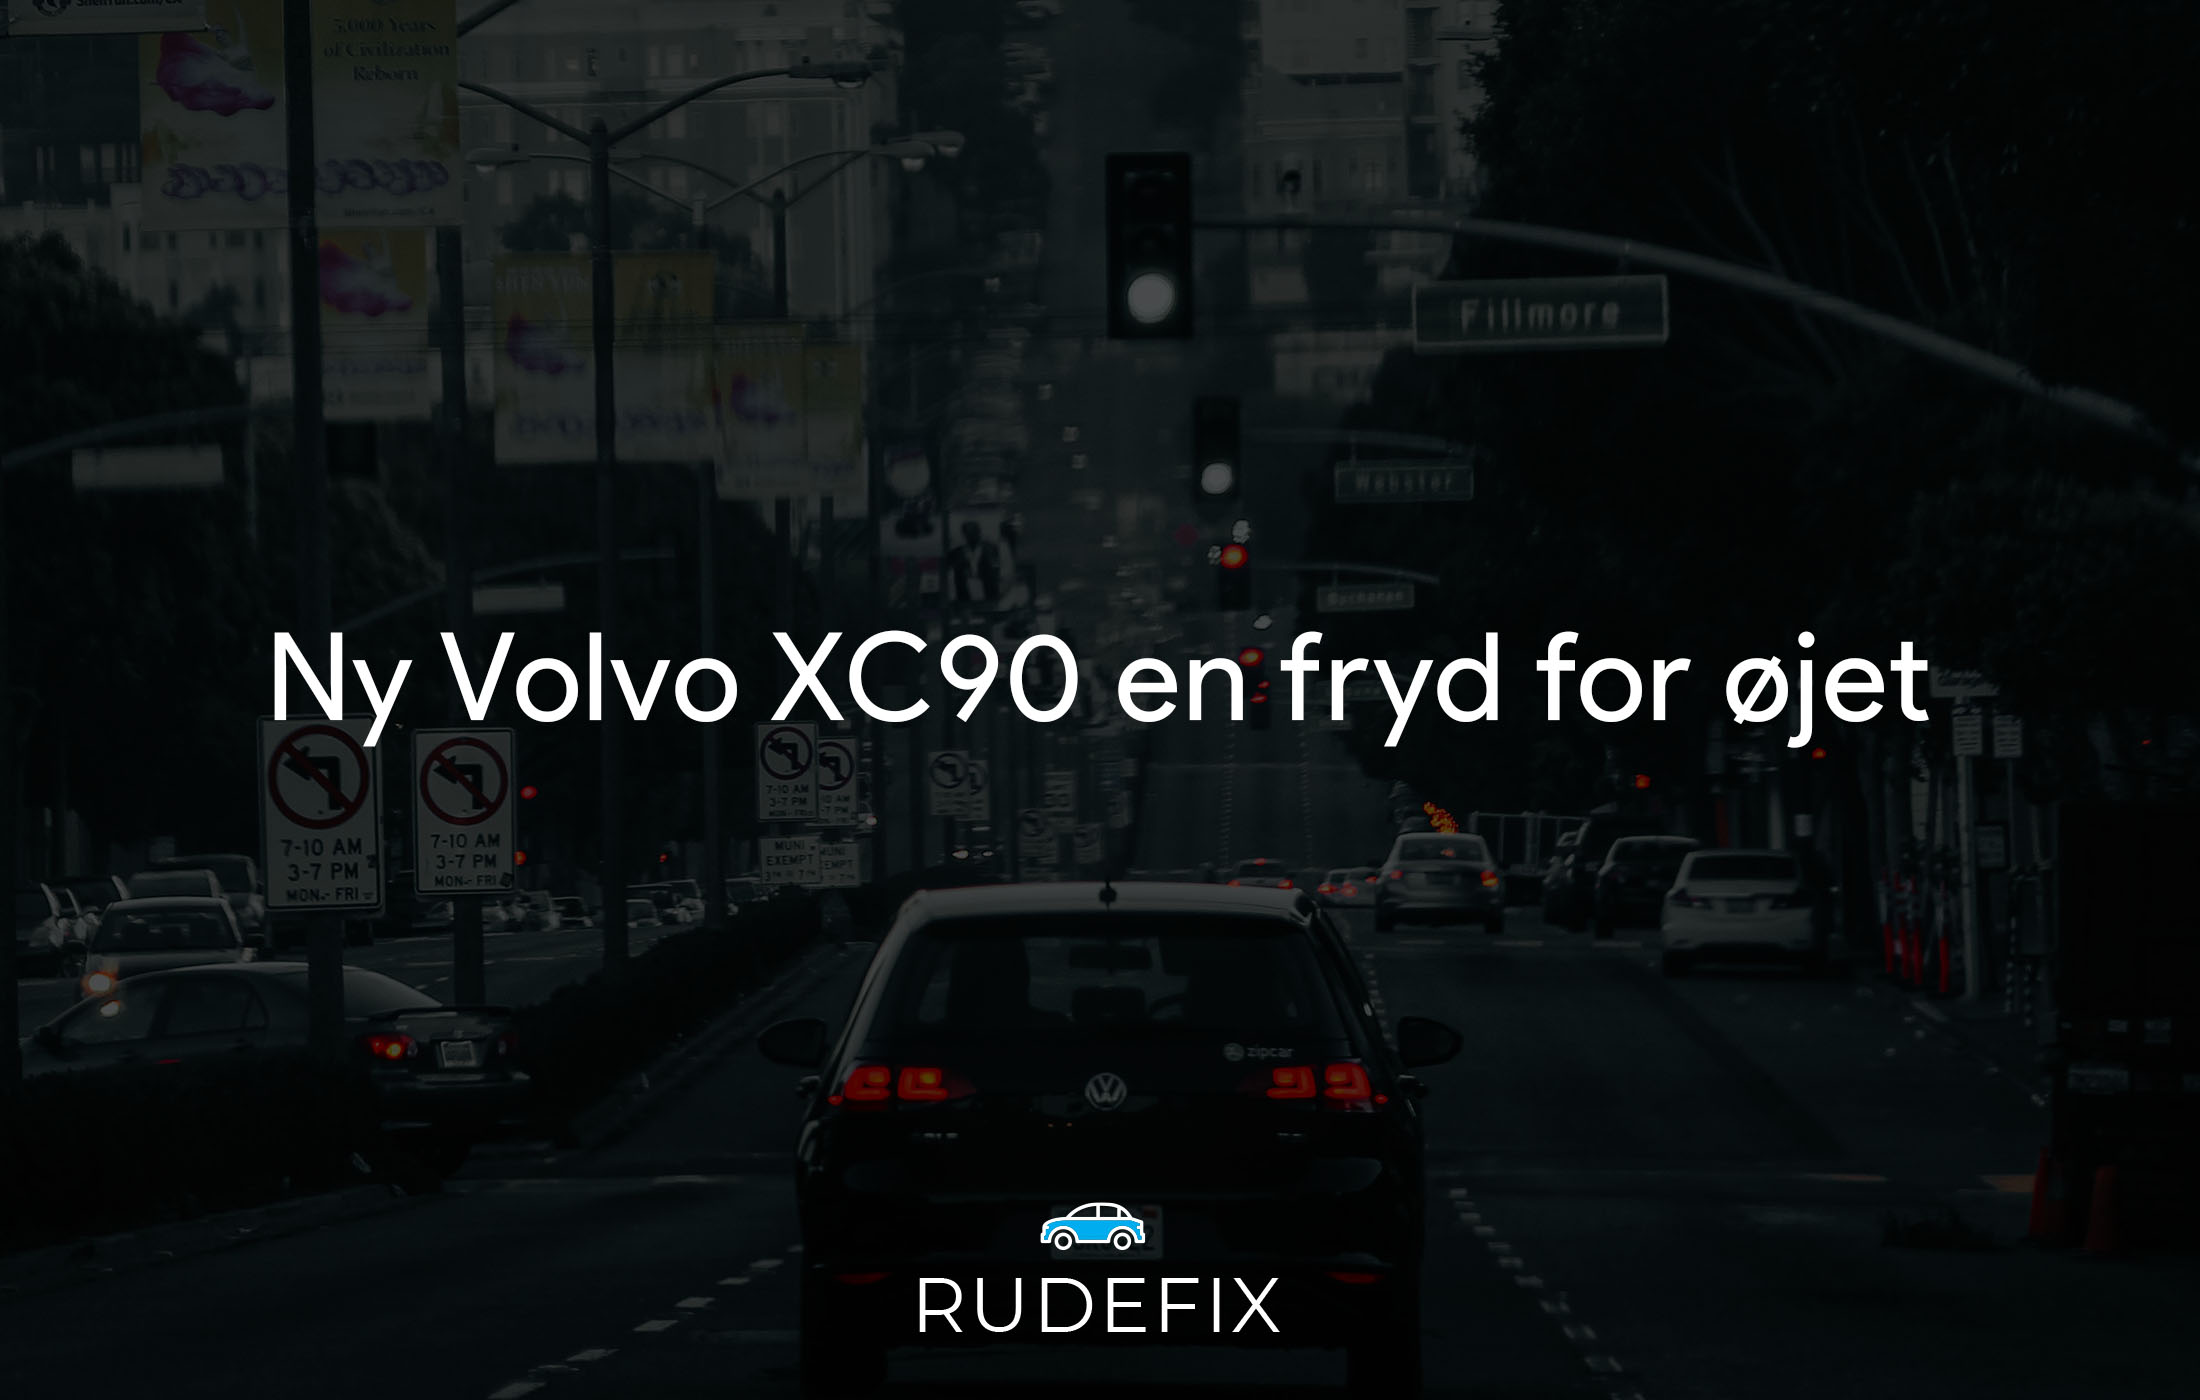 Volvo XC90 en fryd for øjet